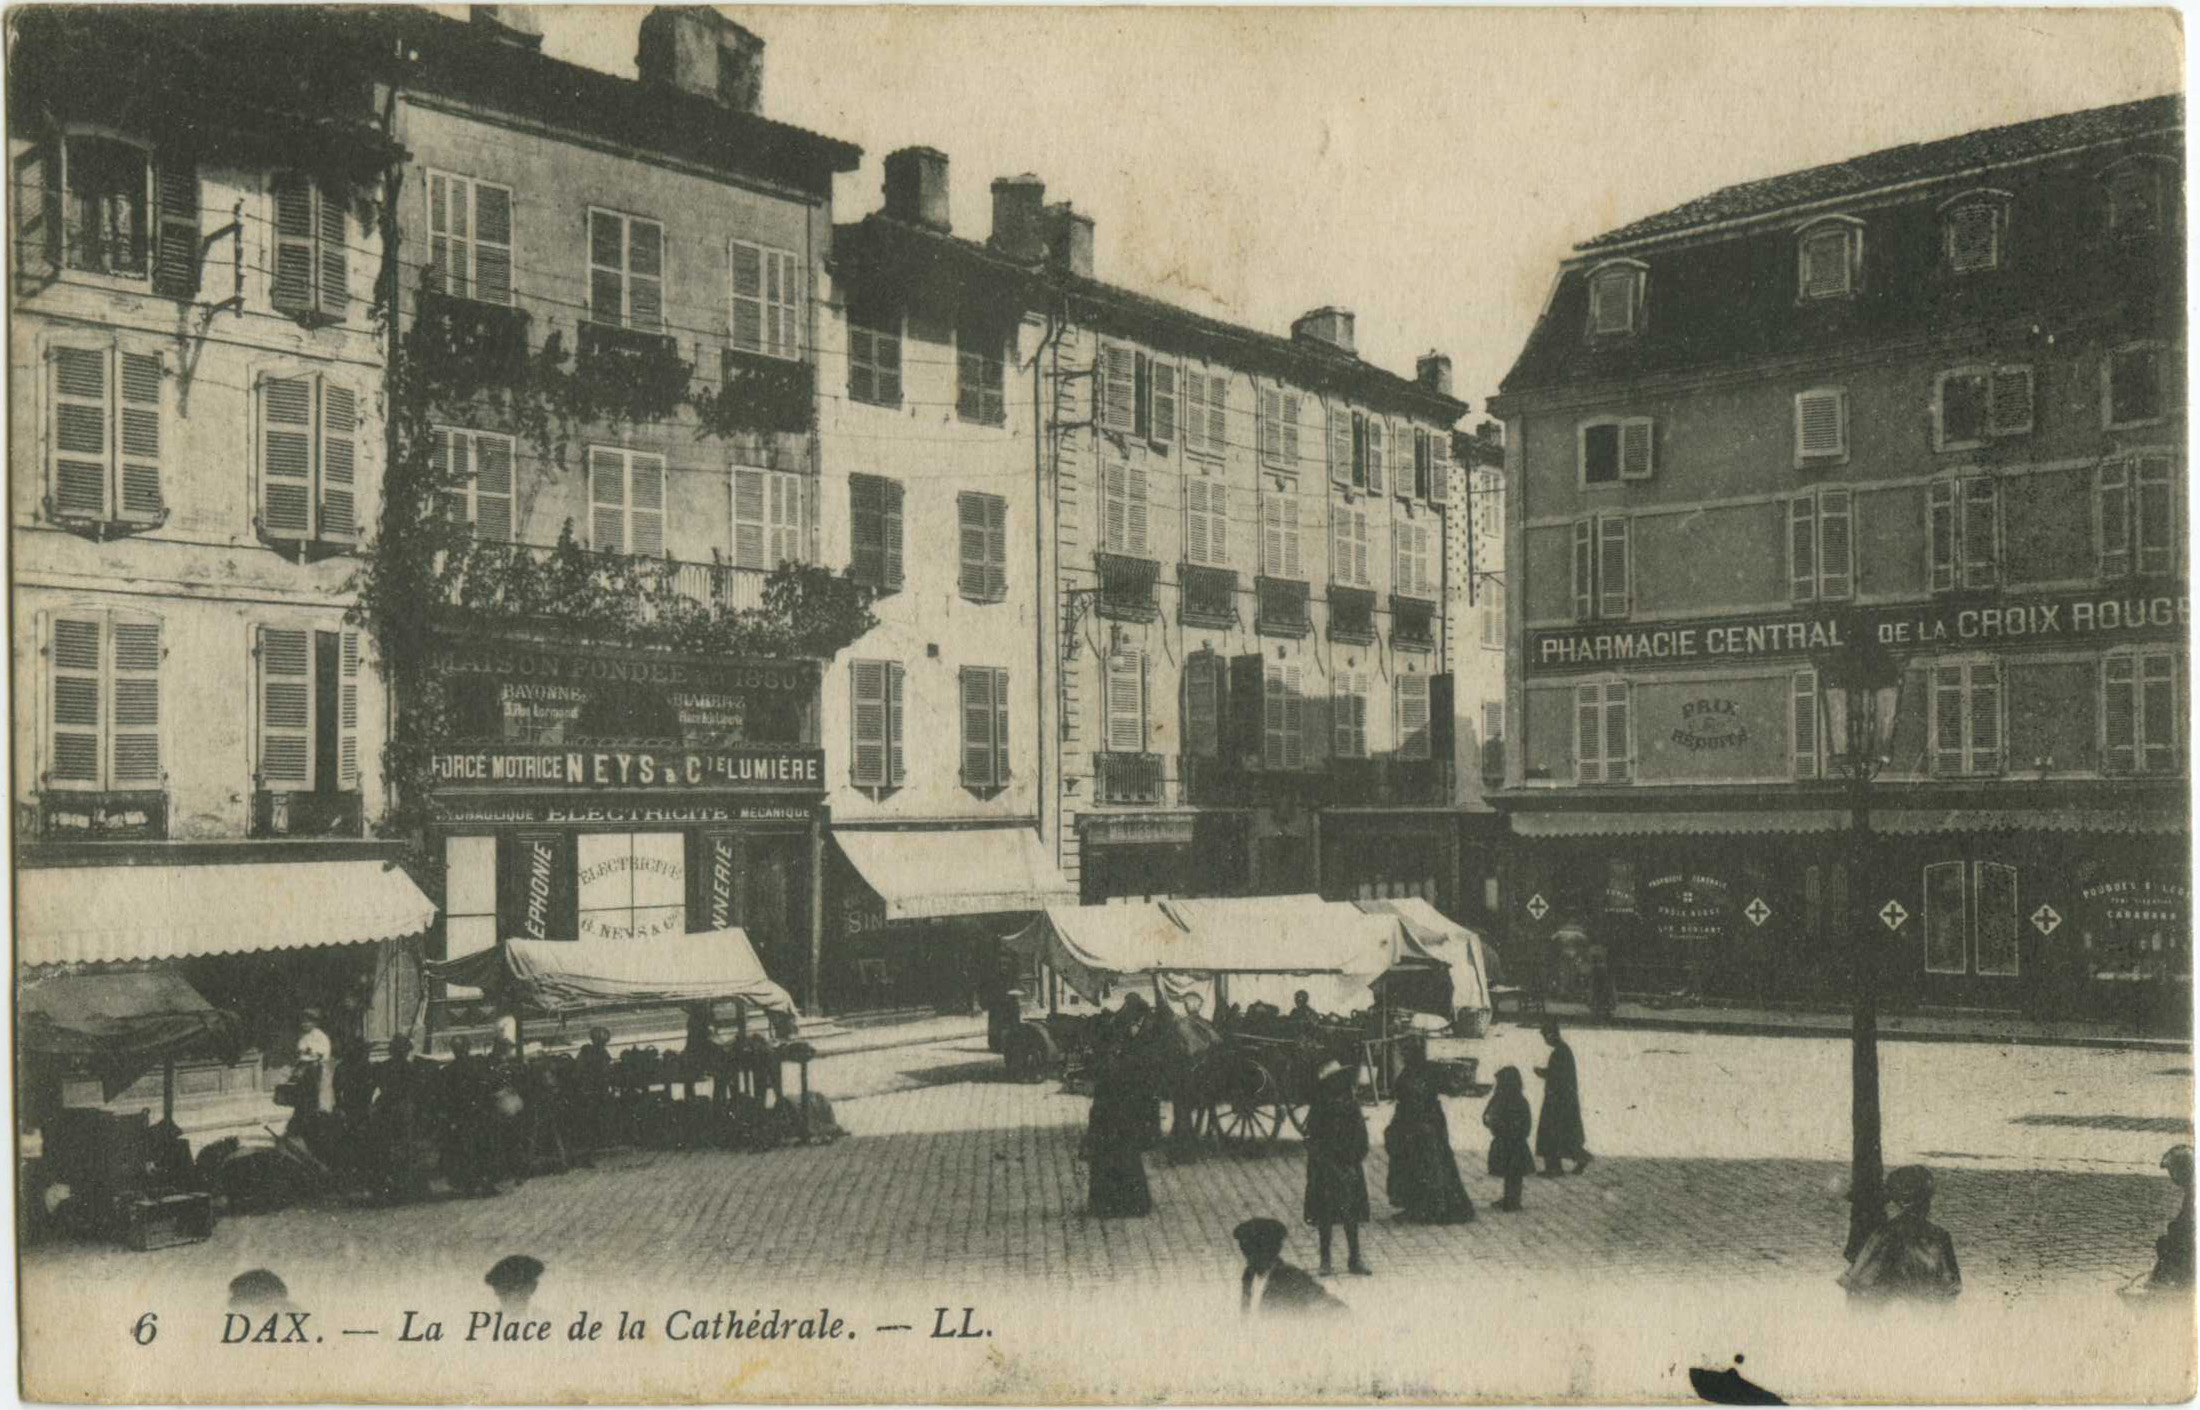 Dax - La Place de la Cathédrale.